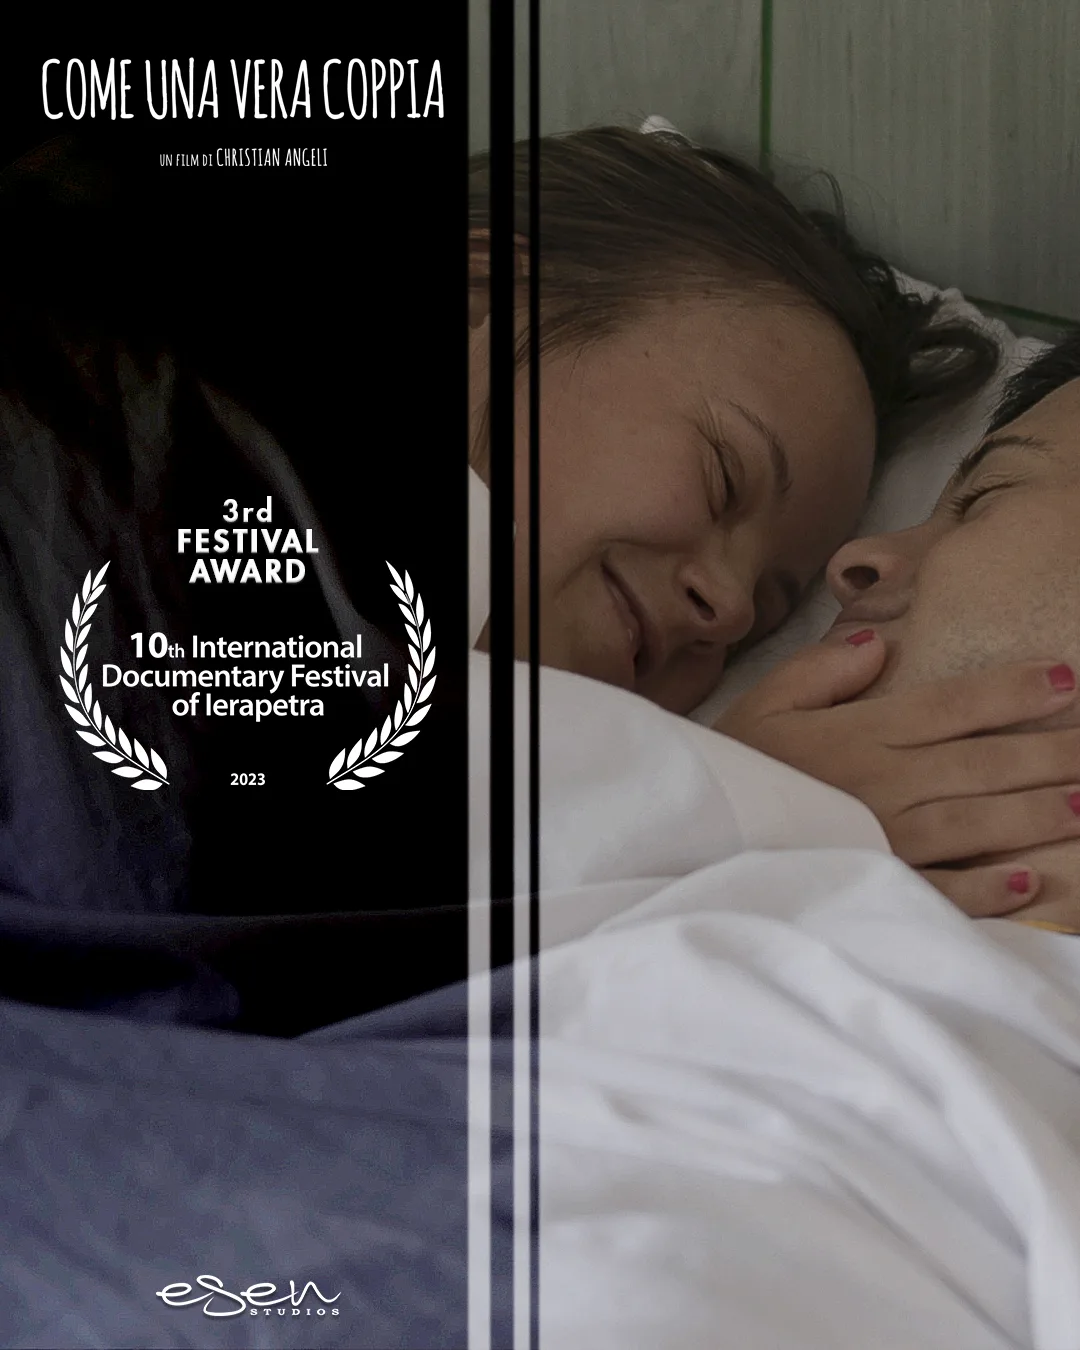 Il documentario "Come una vera coppia" vince a Ierapetra